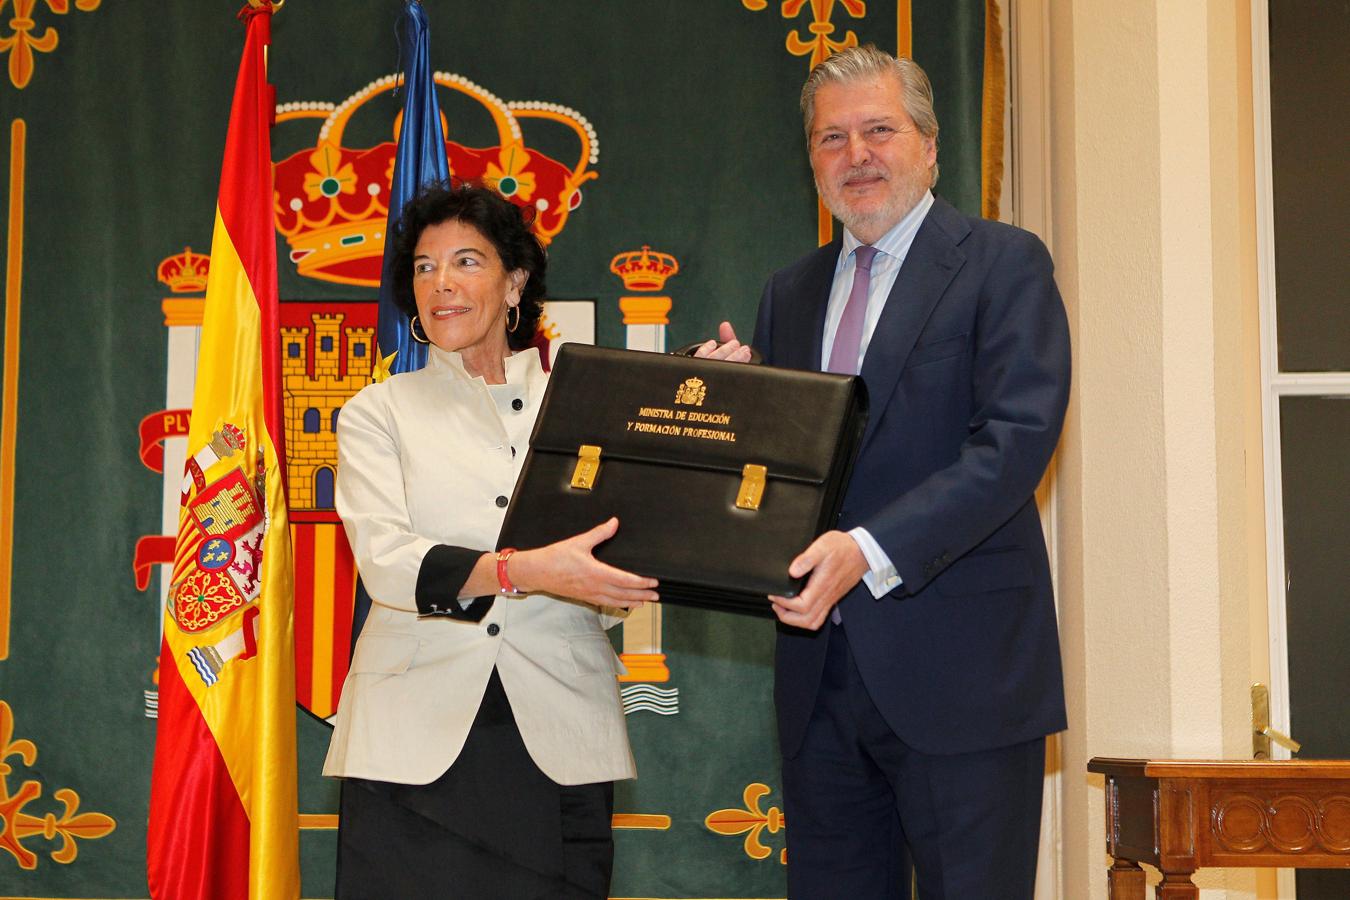 La nueva ministra de Educación y Formación Profesional, Isabel Celaá , recibe la cartera de la que es titular de manos del ministro saliente, Íñigo Méndez de Vigo, en el acto de toma de posesión celebrado en el Ministerio. 